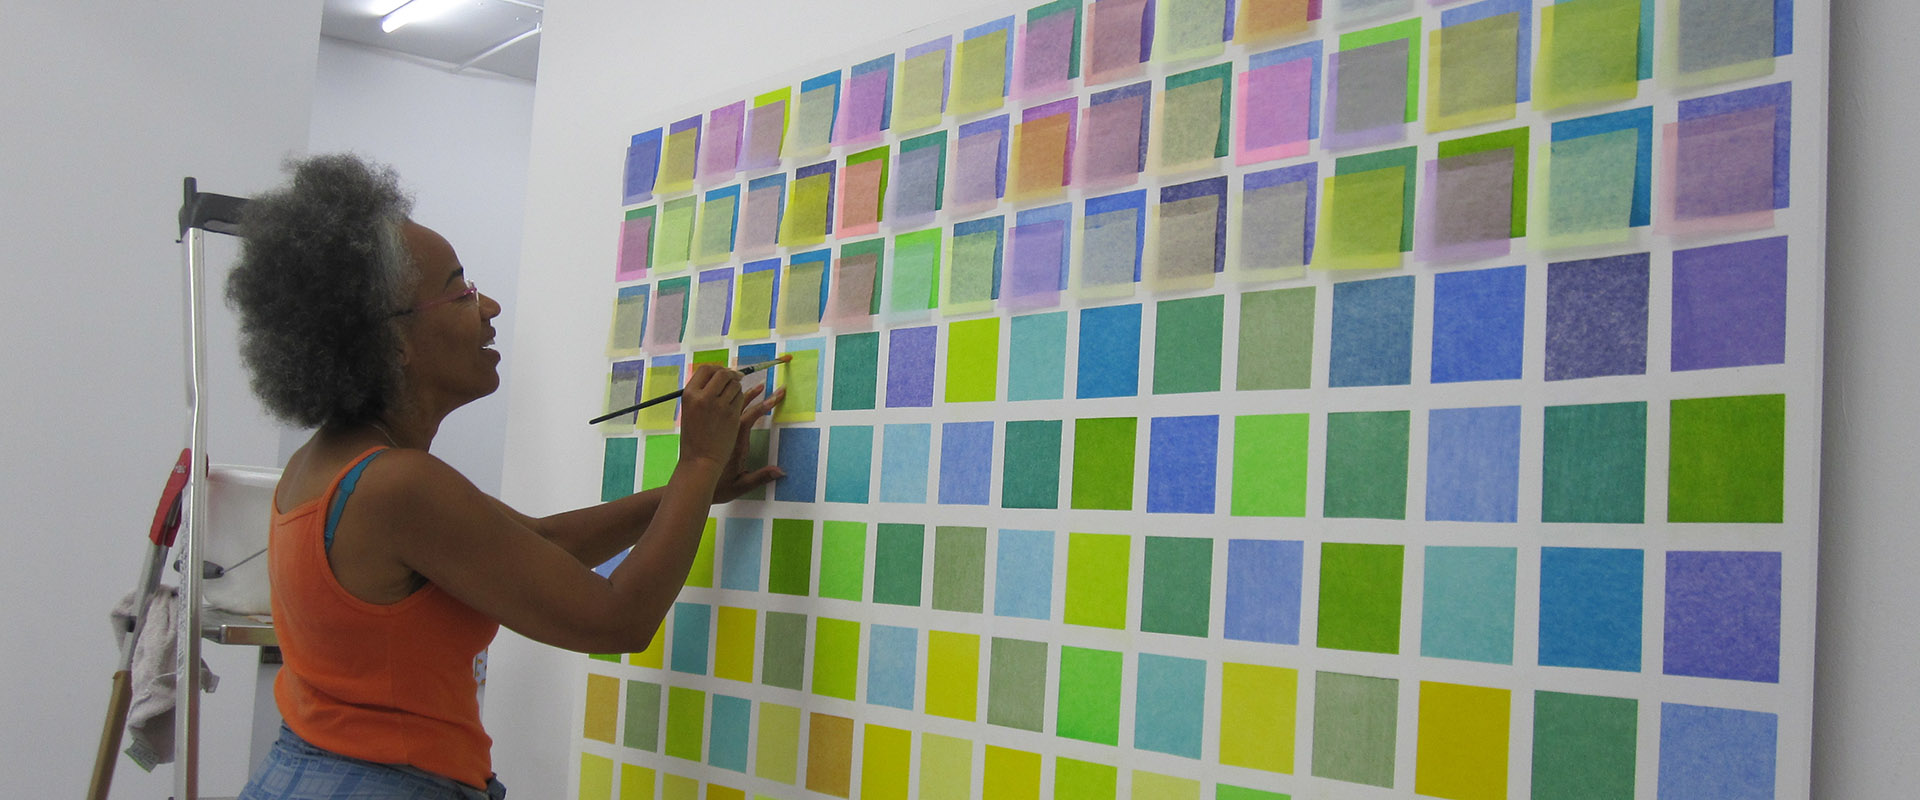 Jocelyn Santos installiert ihre Wandarbeit für die Ausstellung "Works on & with Paper", Galerie Renate Bender 2015